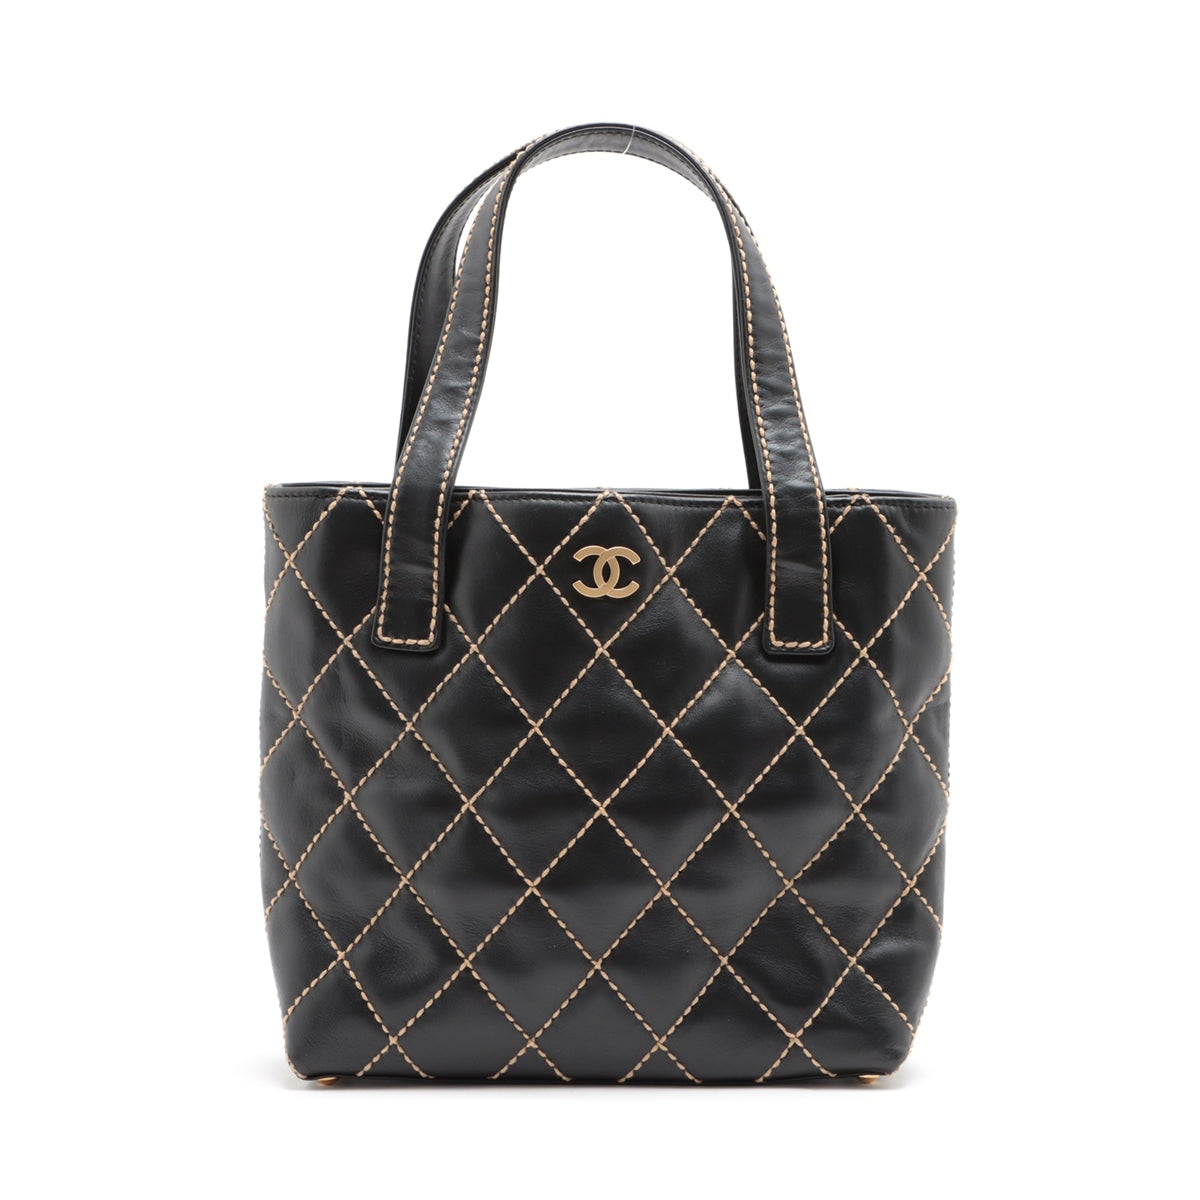 Chanel Wild Stitch Leather Handbag Black matte gold hardware 7XXXXXX